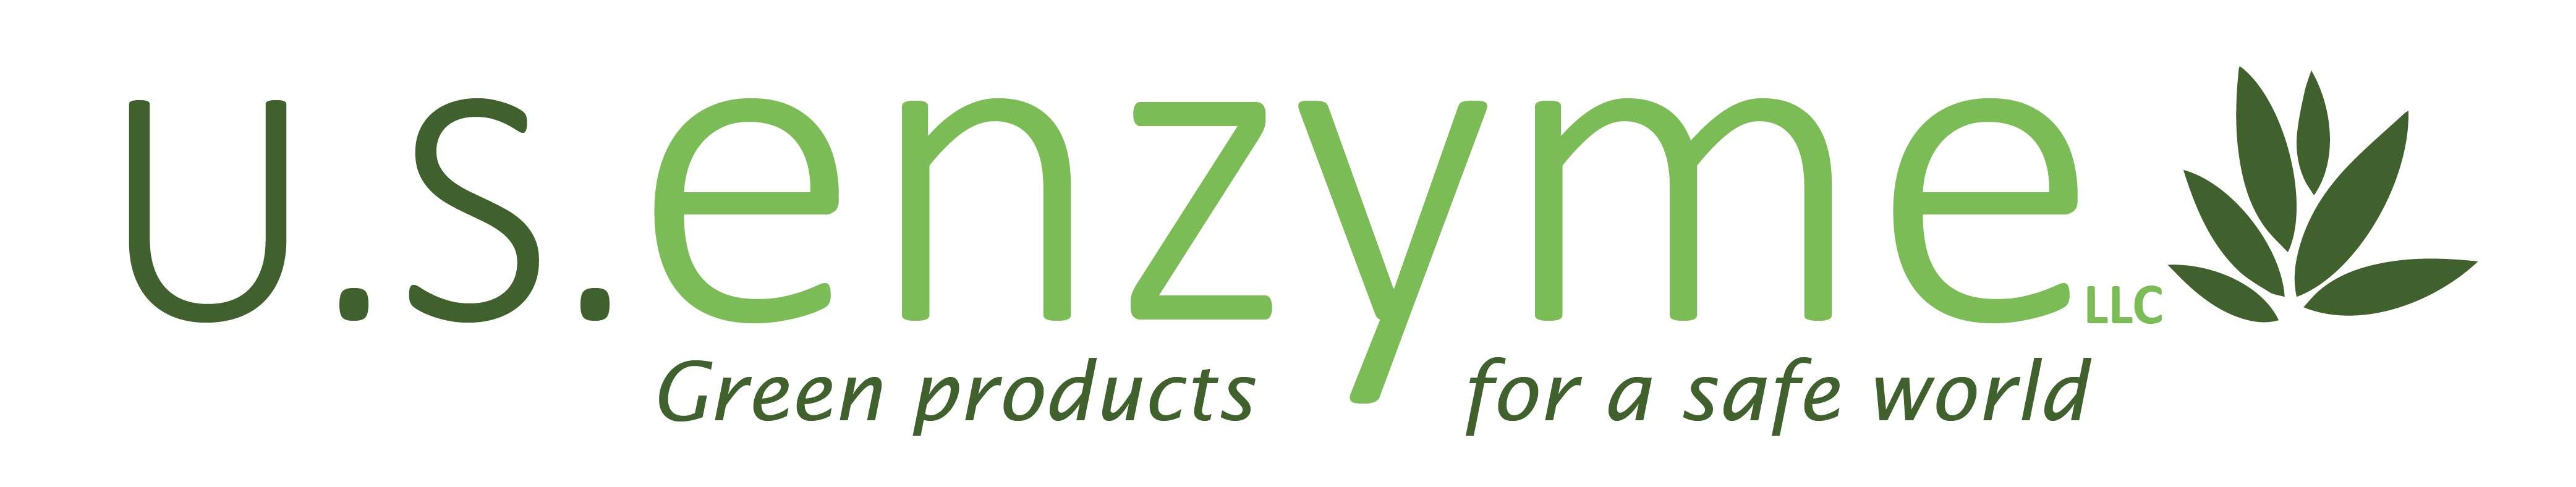 U.S. Enzyme, LLC Logo